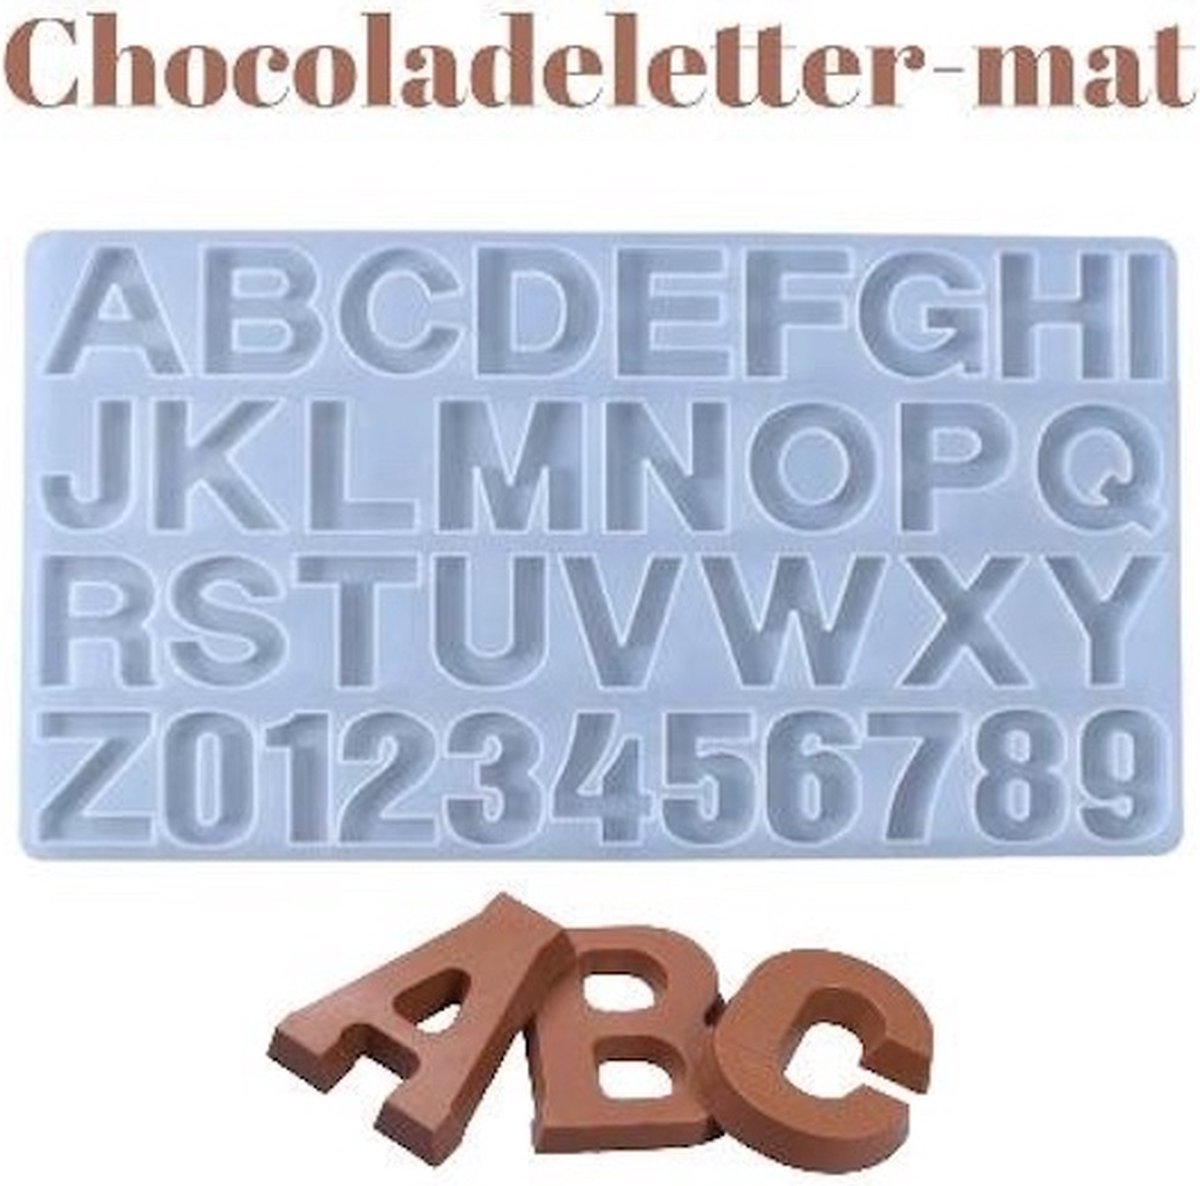 Chocoladeletter mat - Maak je eigen mini Chocoladeletters - chocolade smelten - Sinterklaas - 36x20cm - Hittebestendig silicone - Sinterklaas